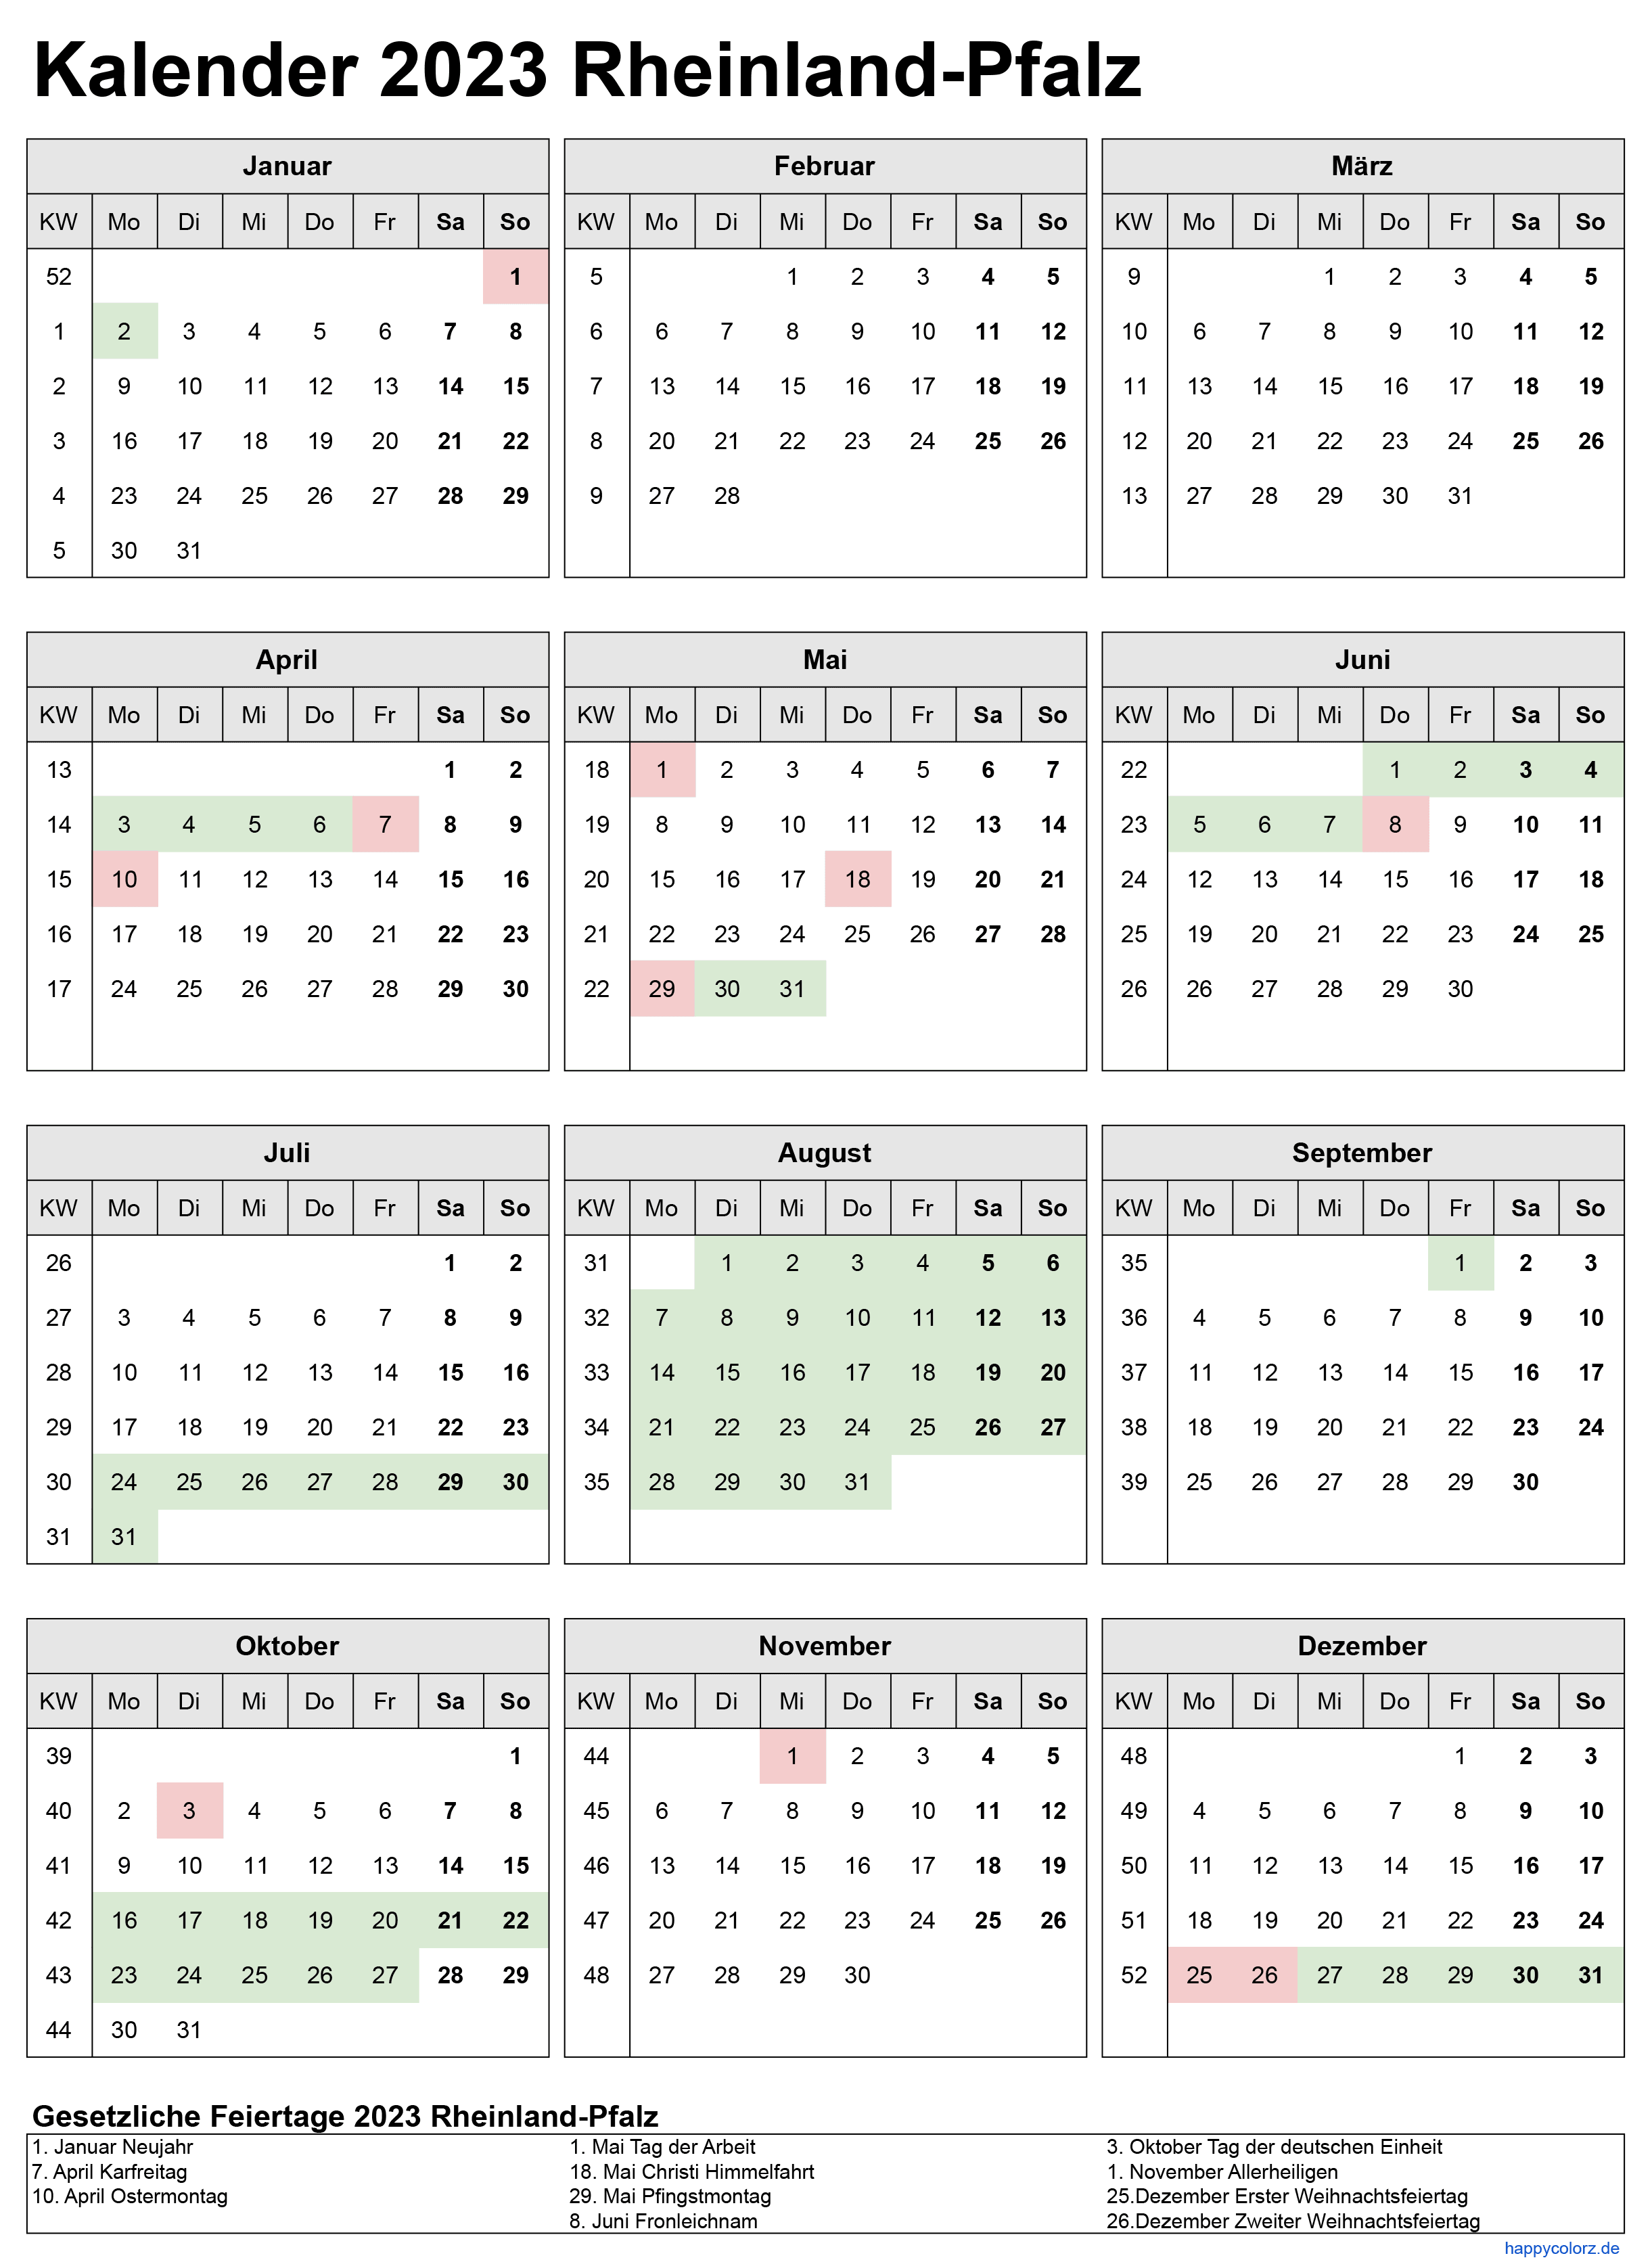 Kalender 2023 Rheinland-Pfalz zum Ausdrucken